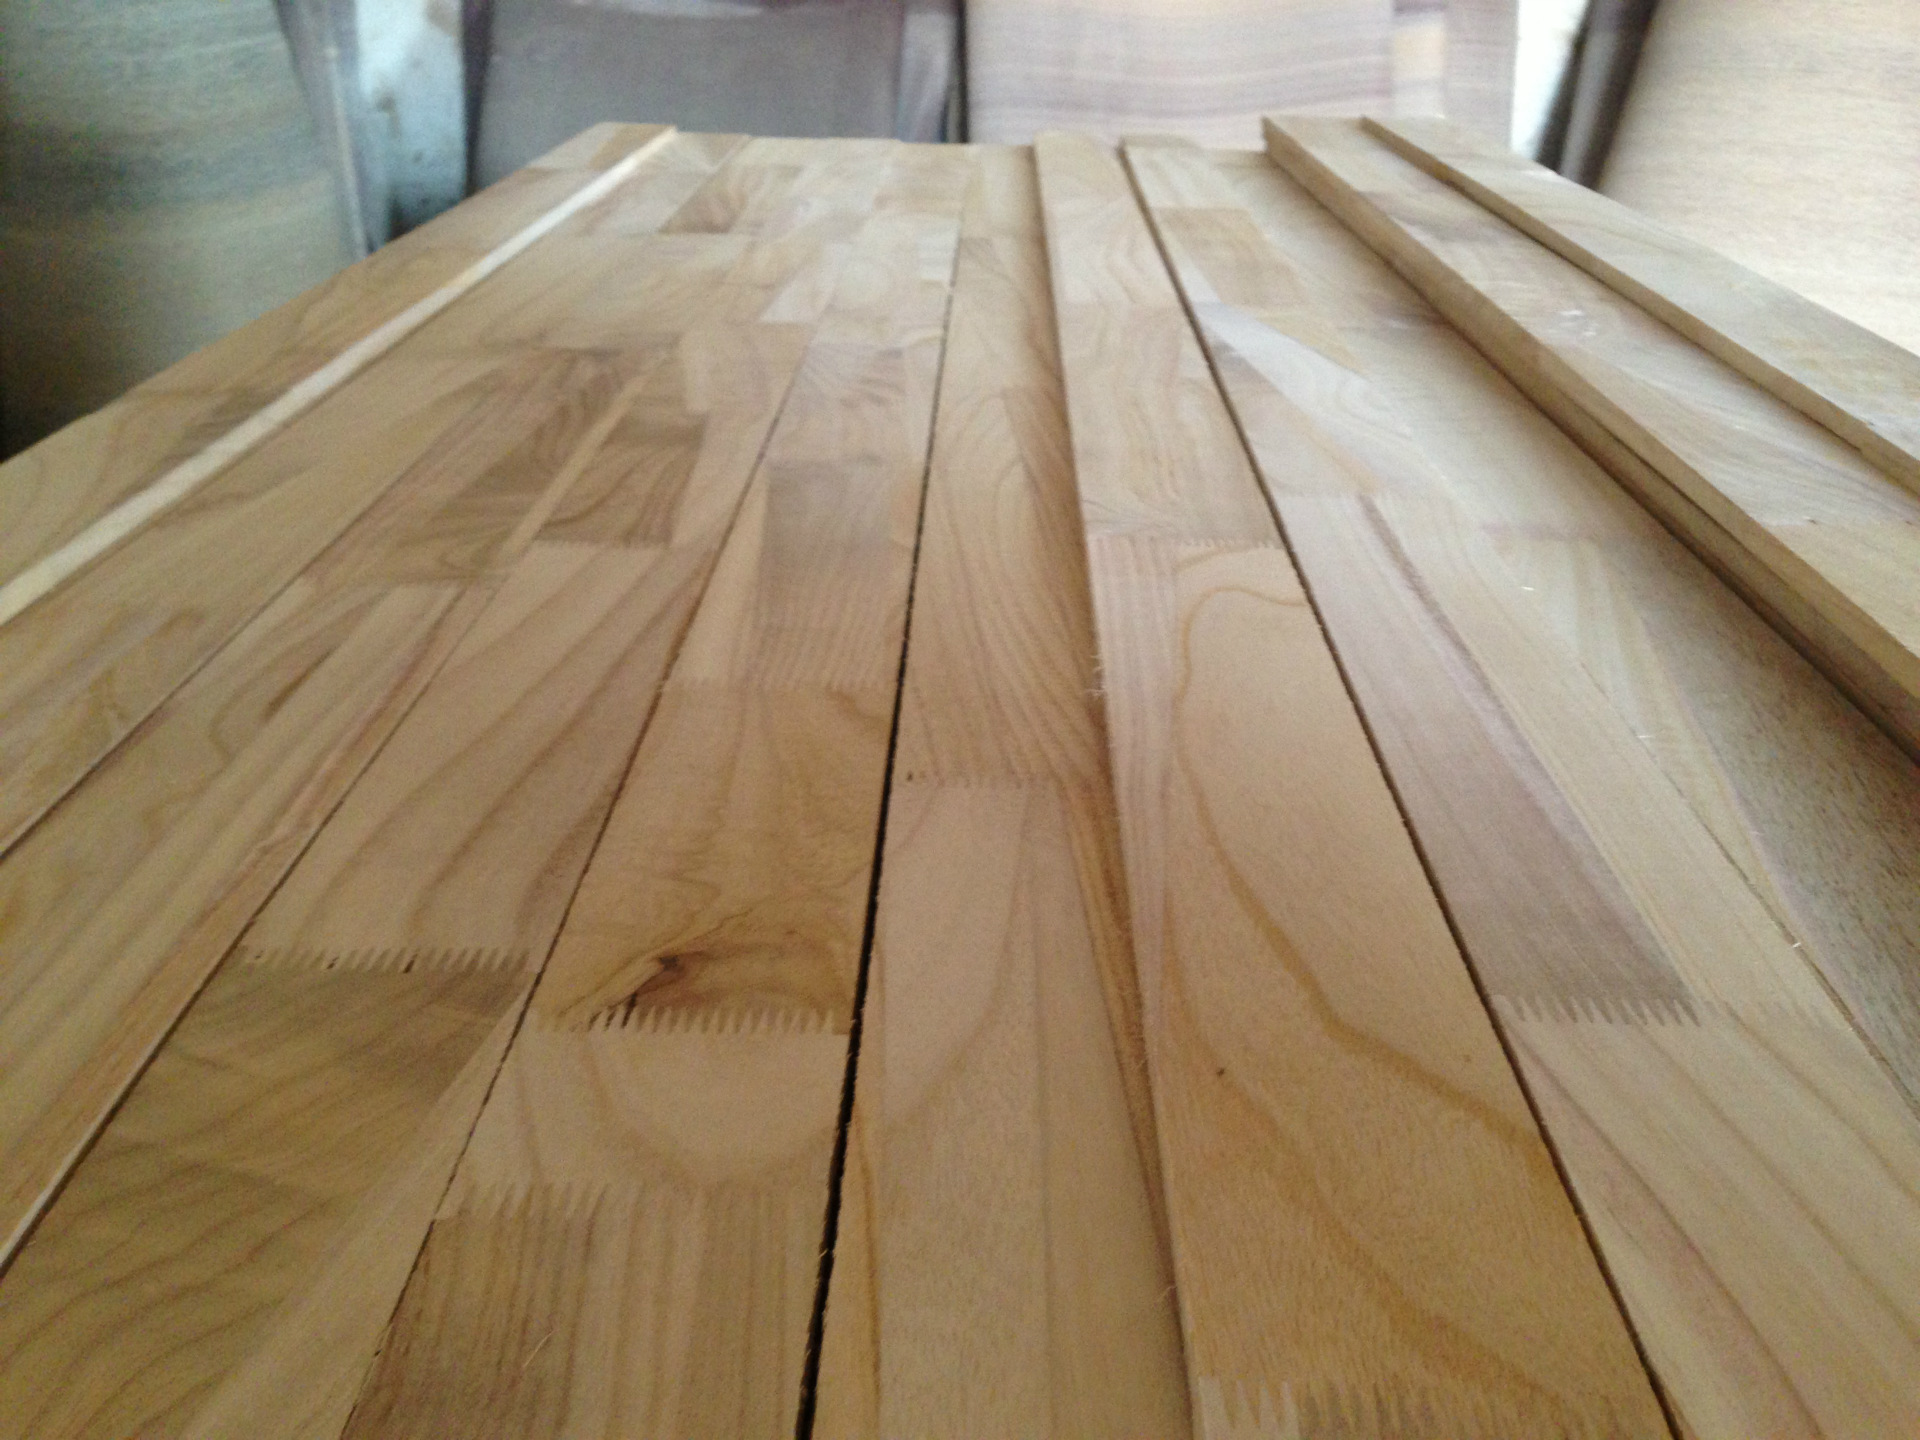 高质量木质型材桐木指接条 批发定做 质优价廉 13685304111